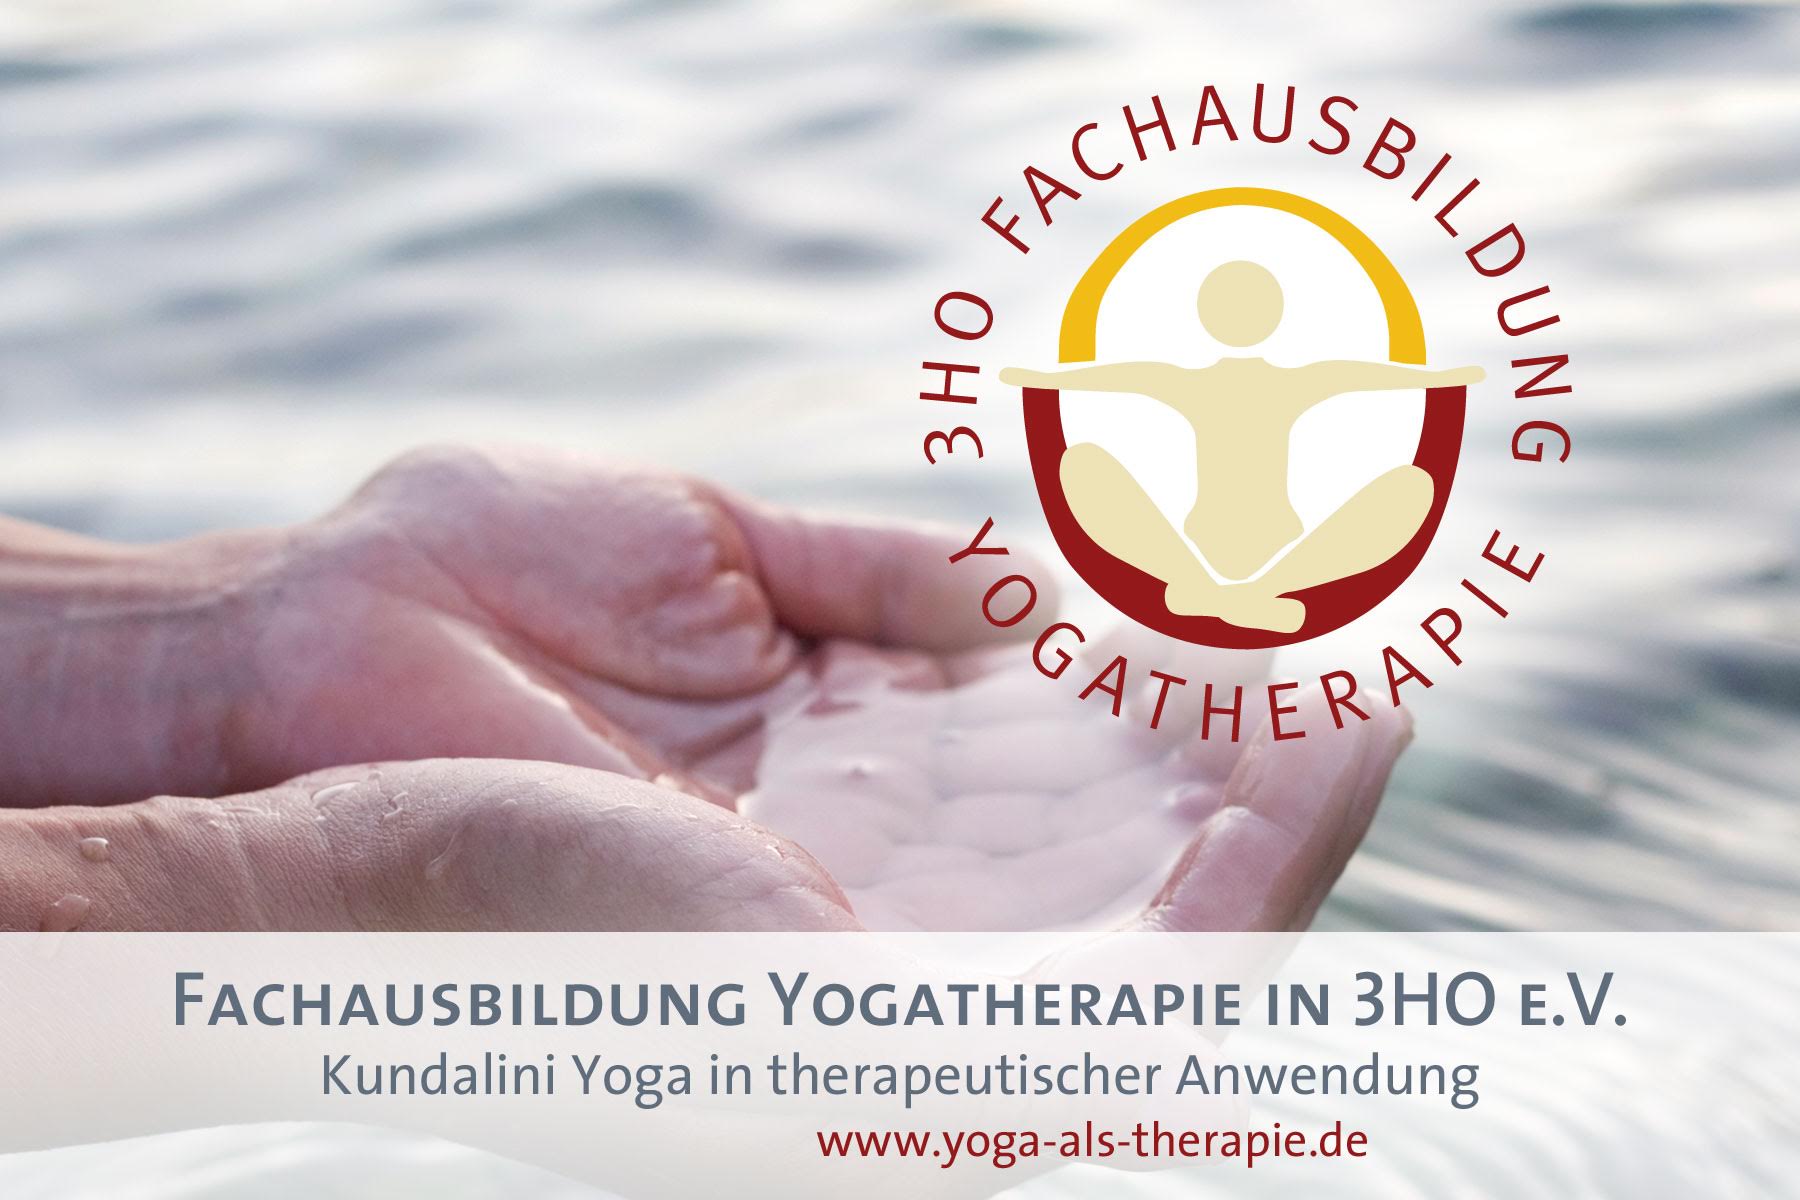 (c) Yoga-als-therapie.de